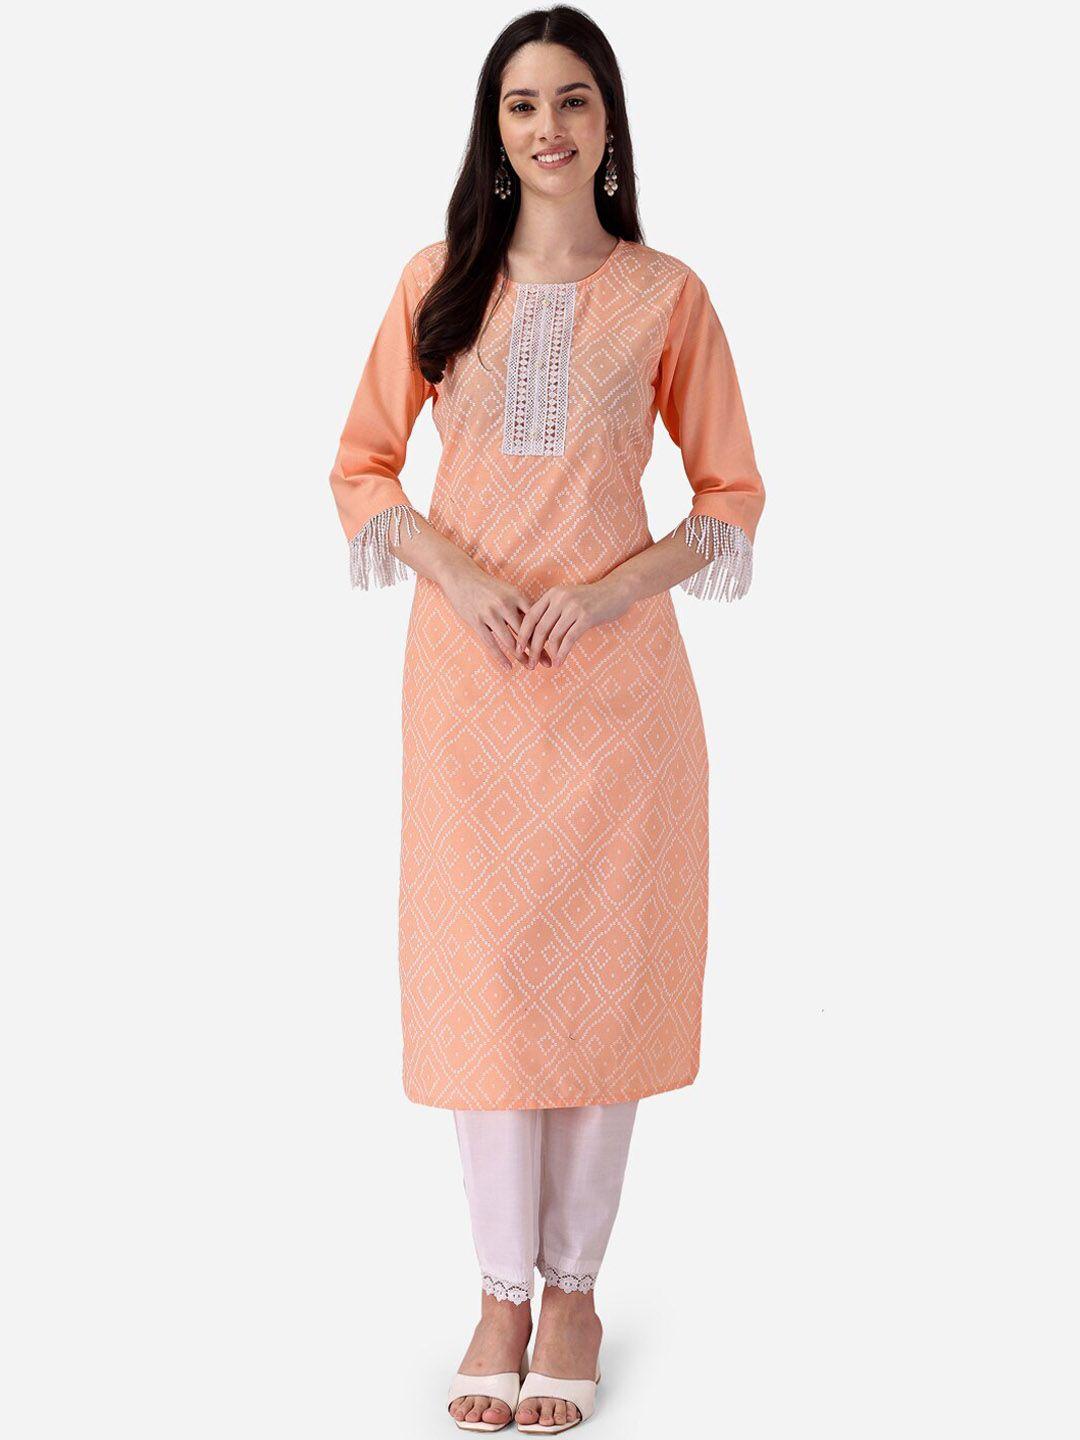 style samsara bandhani printed regular kurta with trousers